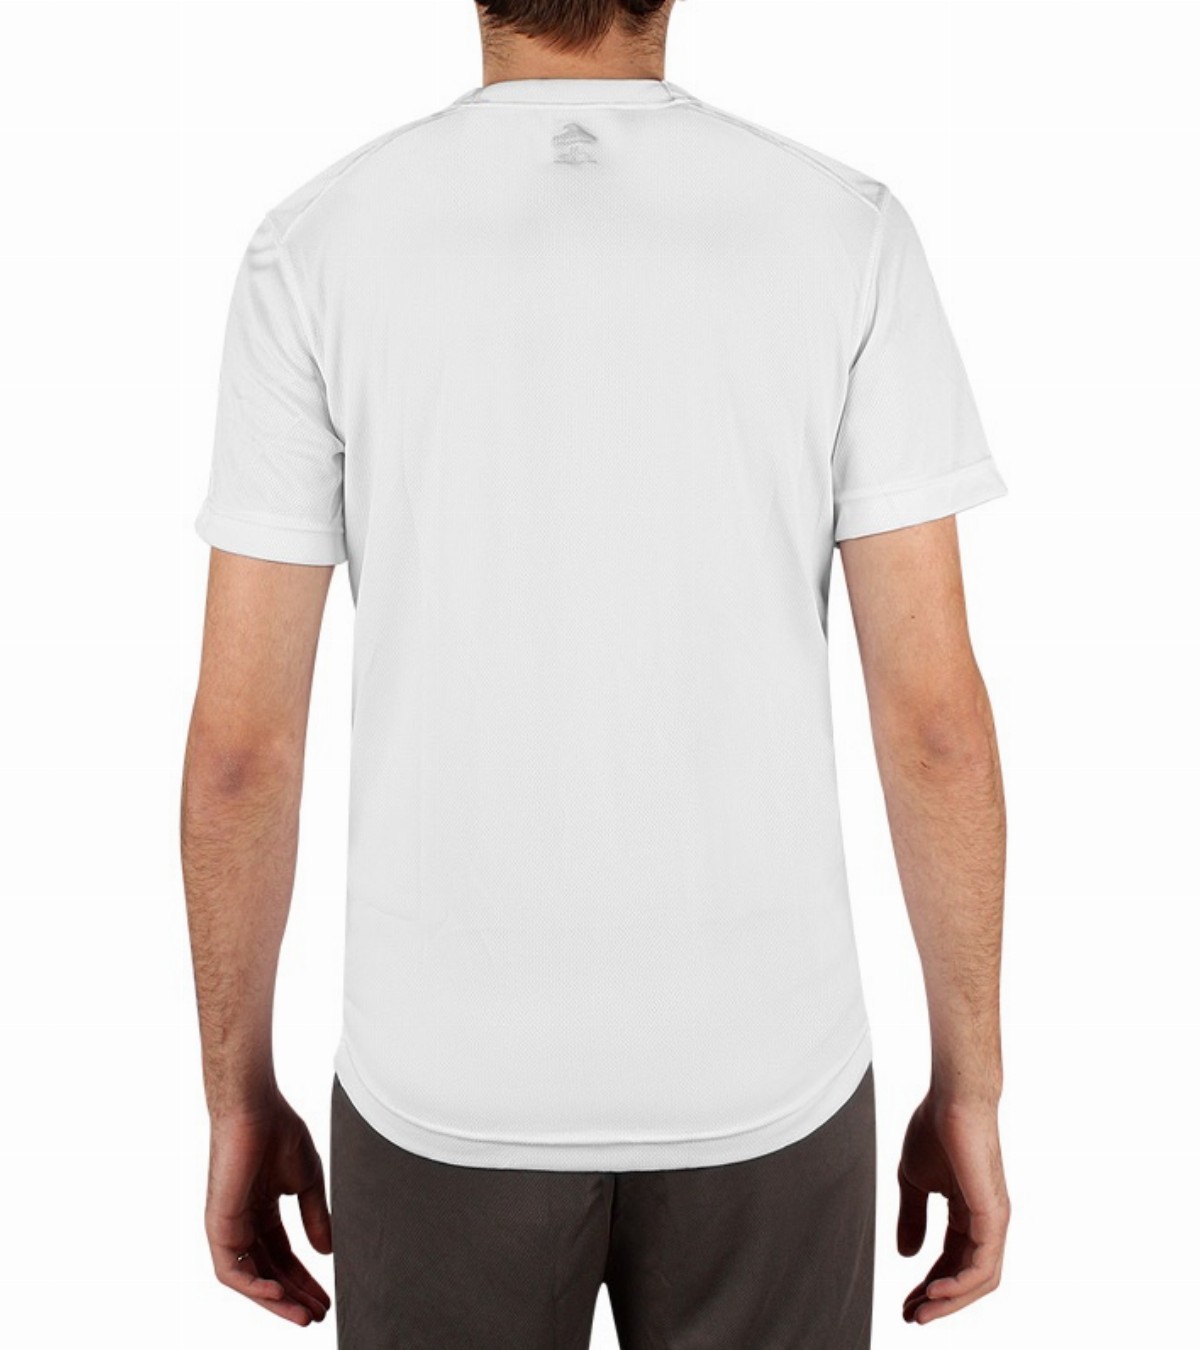 Montagne: camisetas, camiseta, camisetas termicas, camiseta termica, camisetas de, camisetas ...